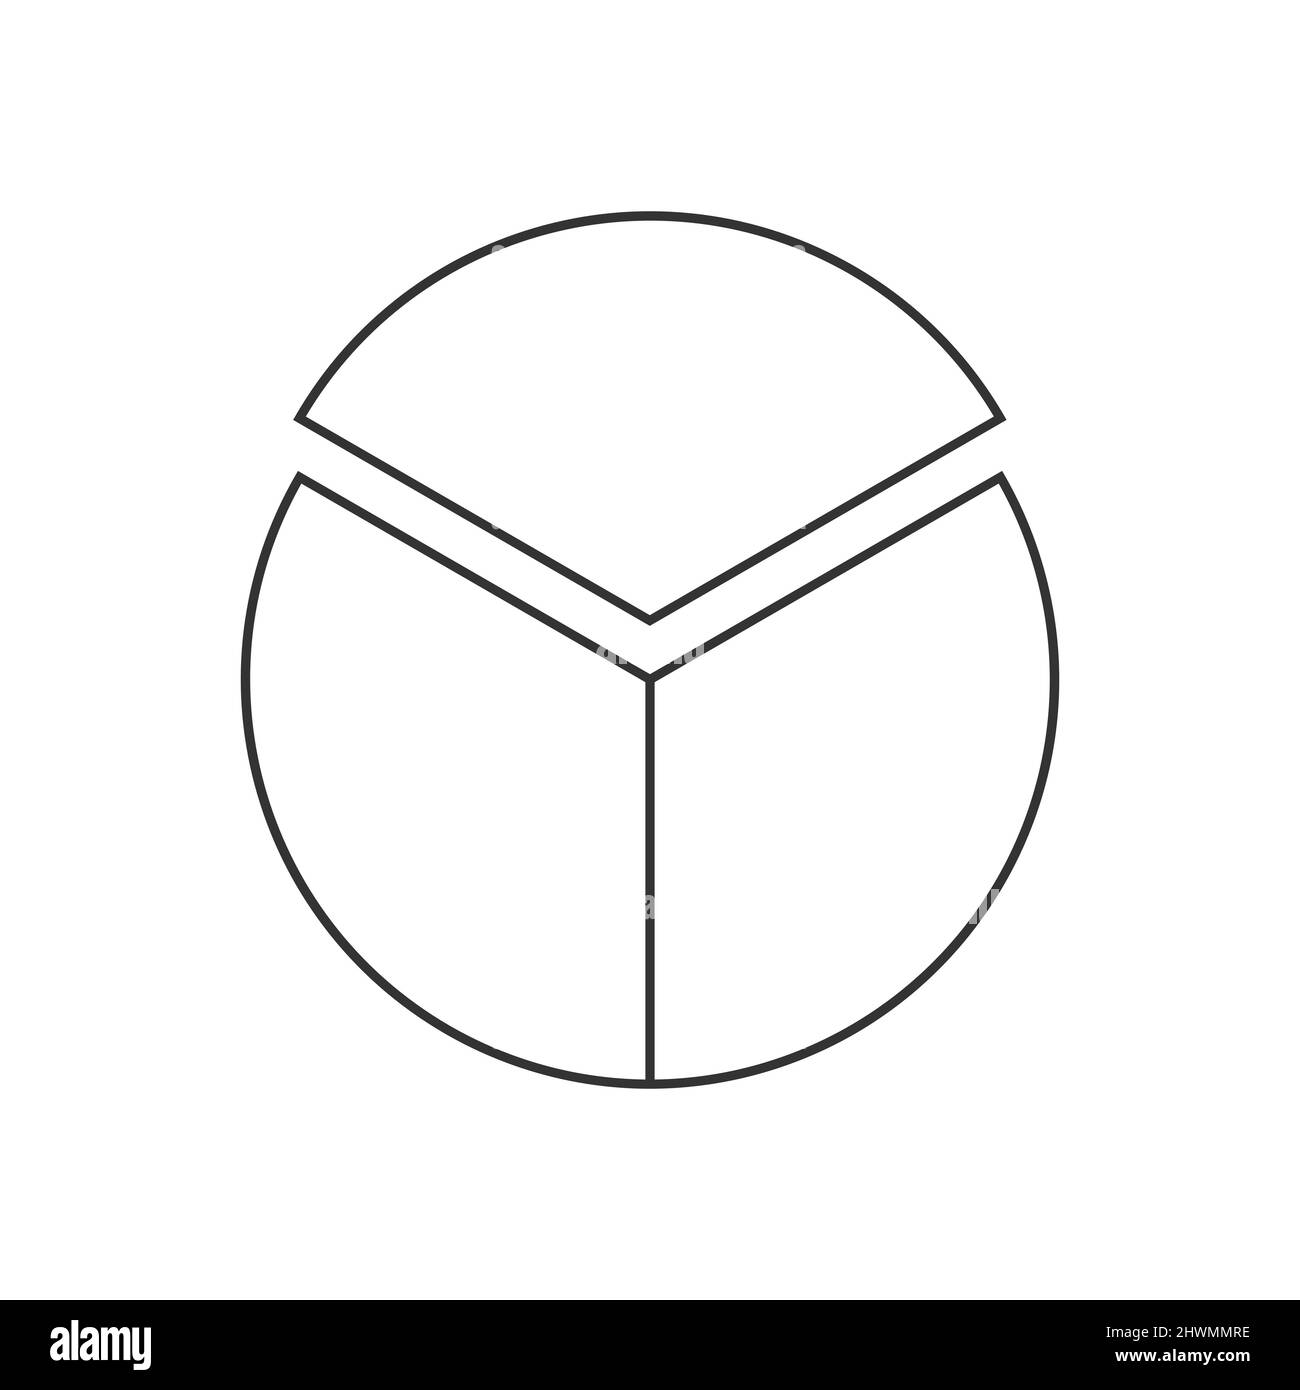 Cerchio segmentato in 3 parti uguali. Forma a torta o pizza tagliata a tre fette. Esempio di grafico statistico rotondo isolato su sfondo bianco. Illustrazione del contorno vettoriale Illustrazione Vettoriale